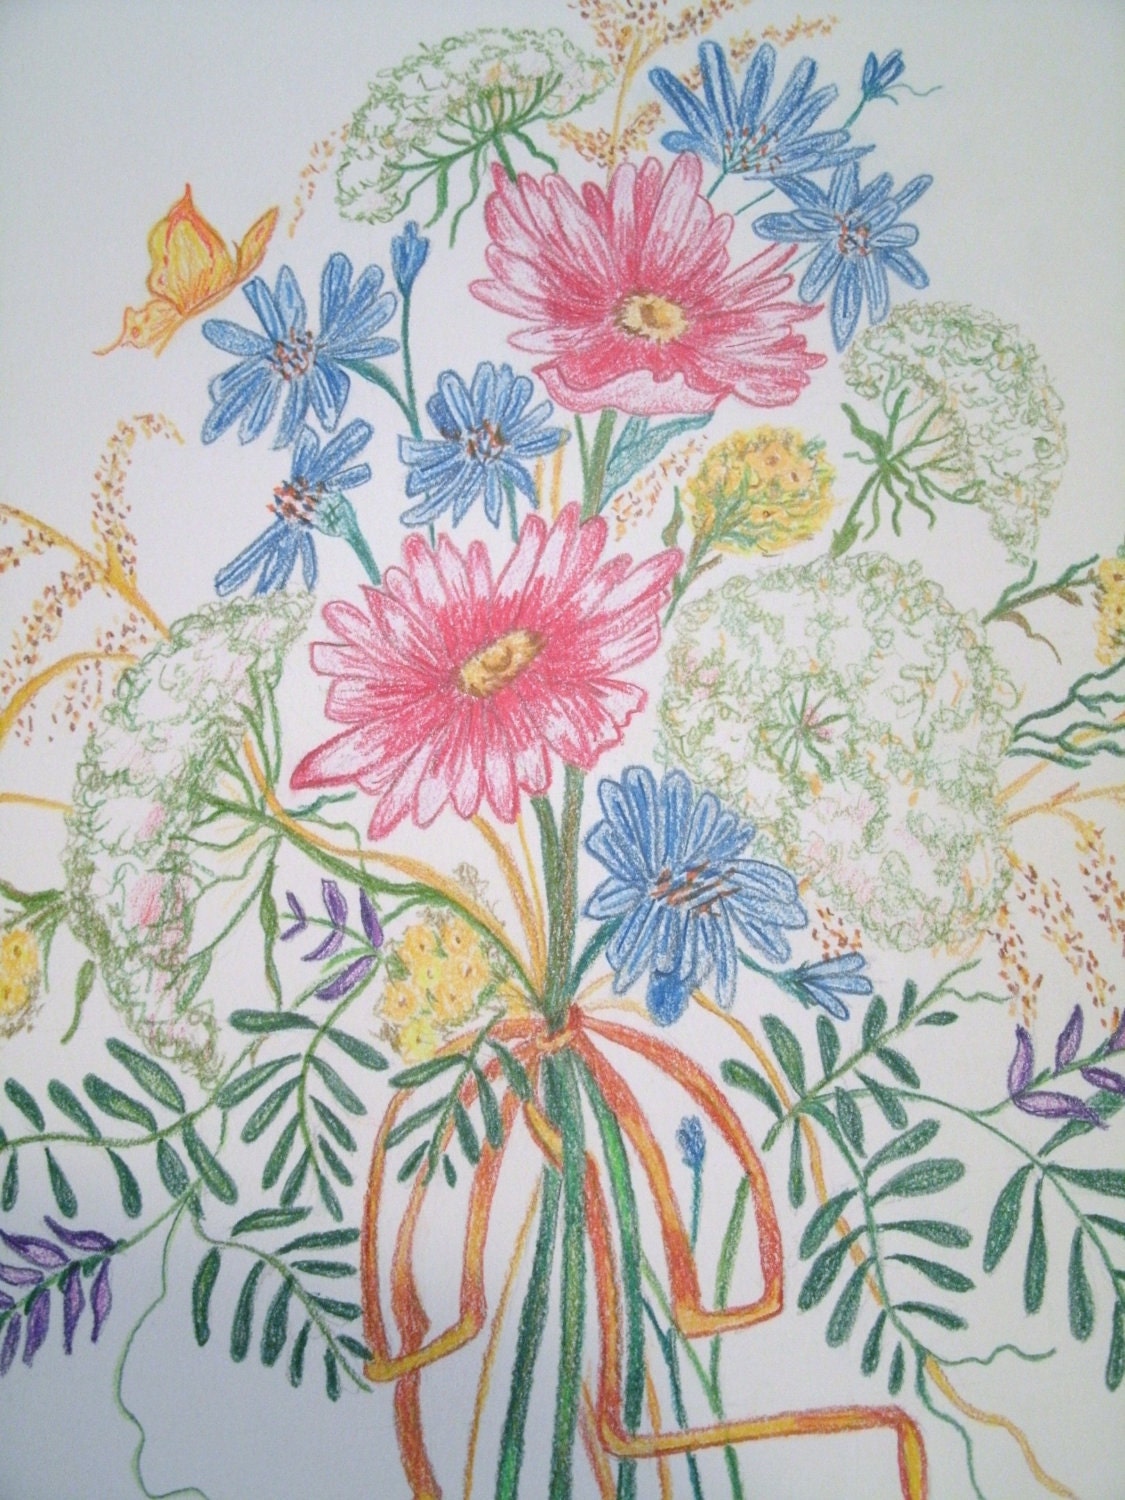 drawings of wildflowers